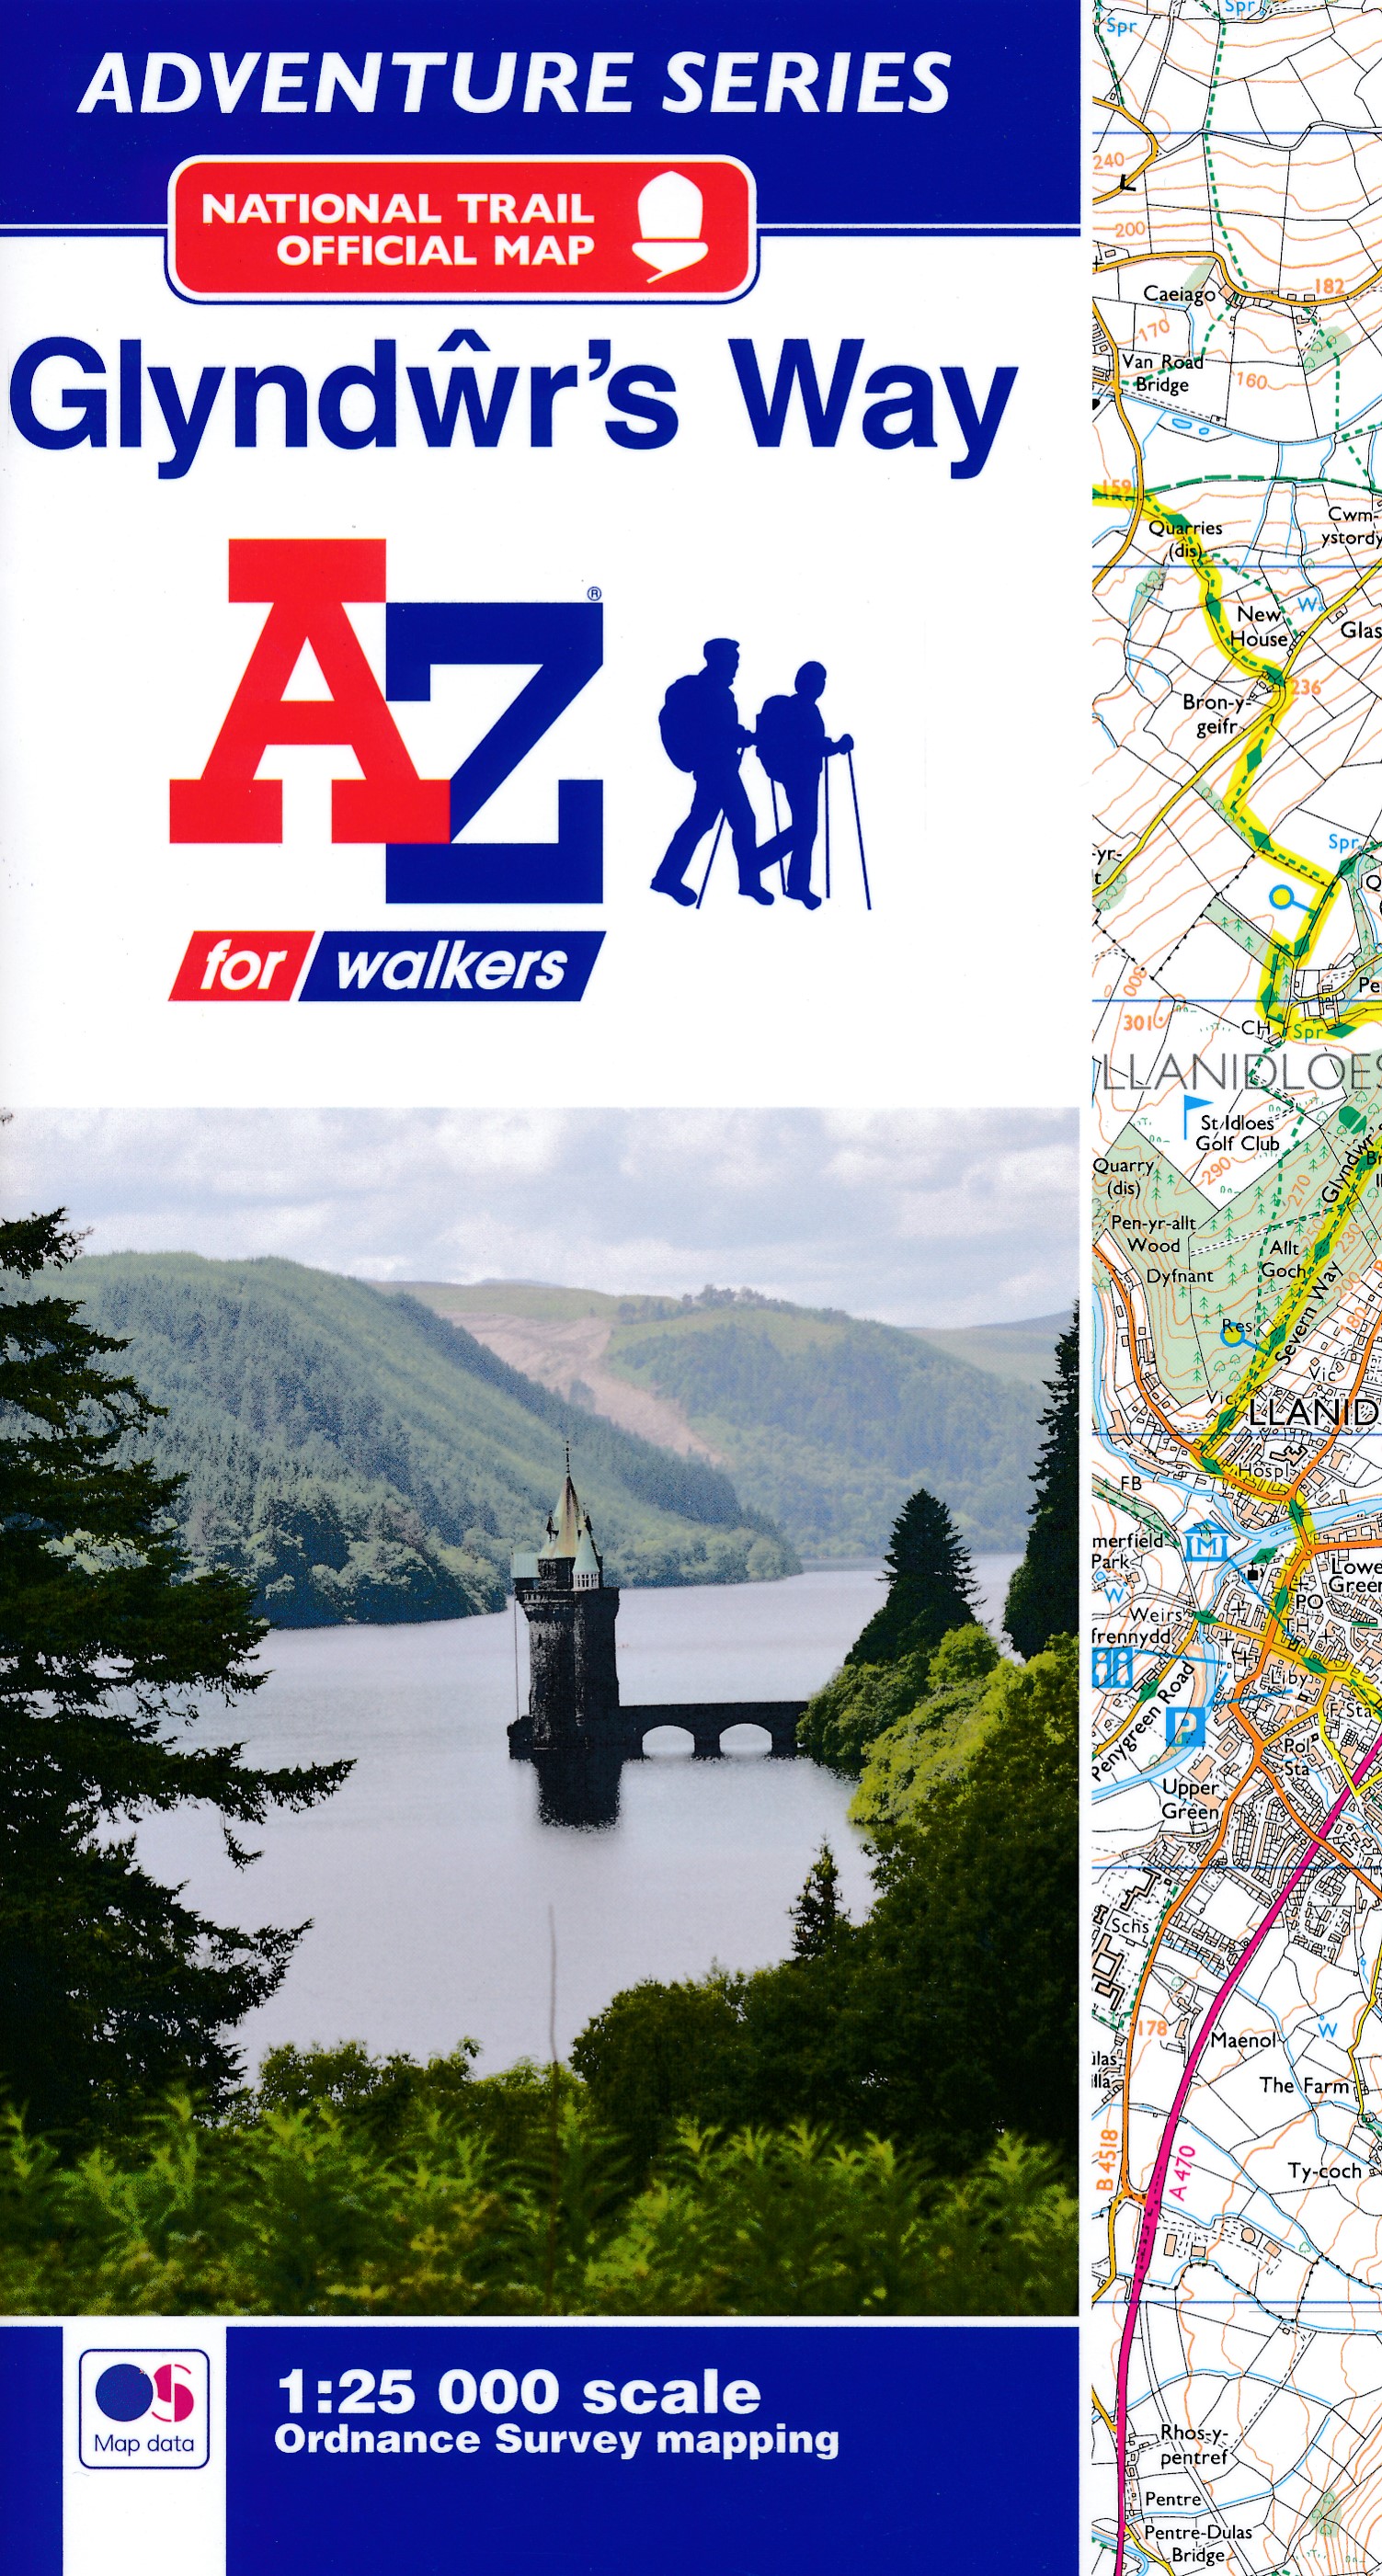 Online bestellen: Wandelatlas Adventure Atlas Glyndwr's Way | A-Z Map Company